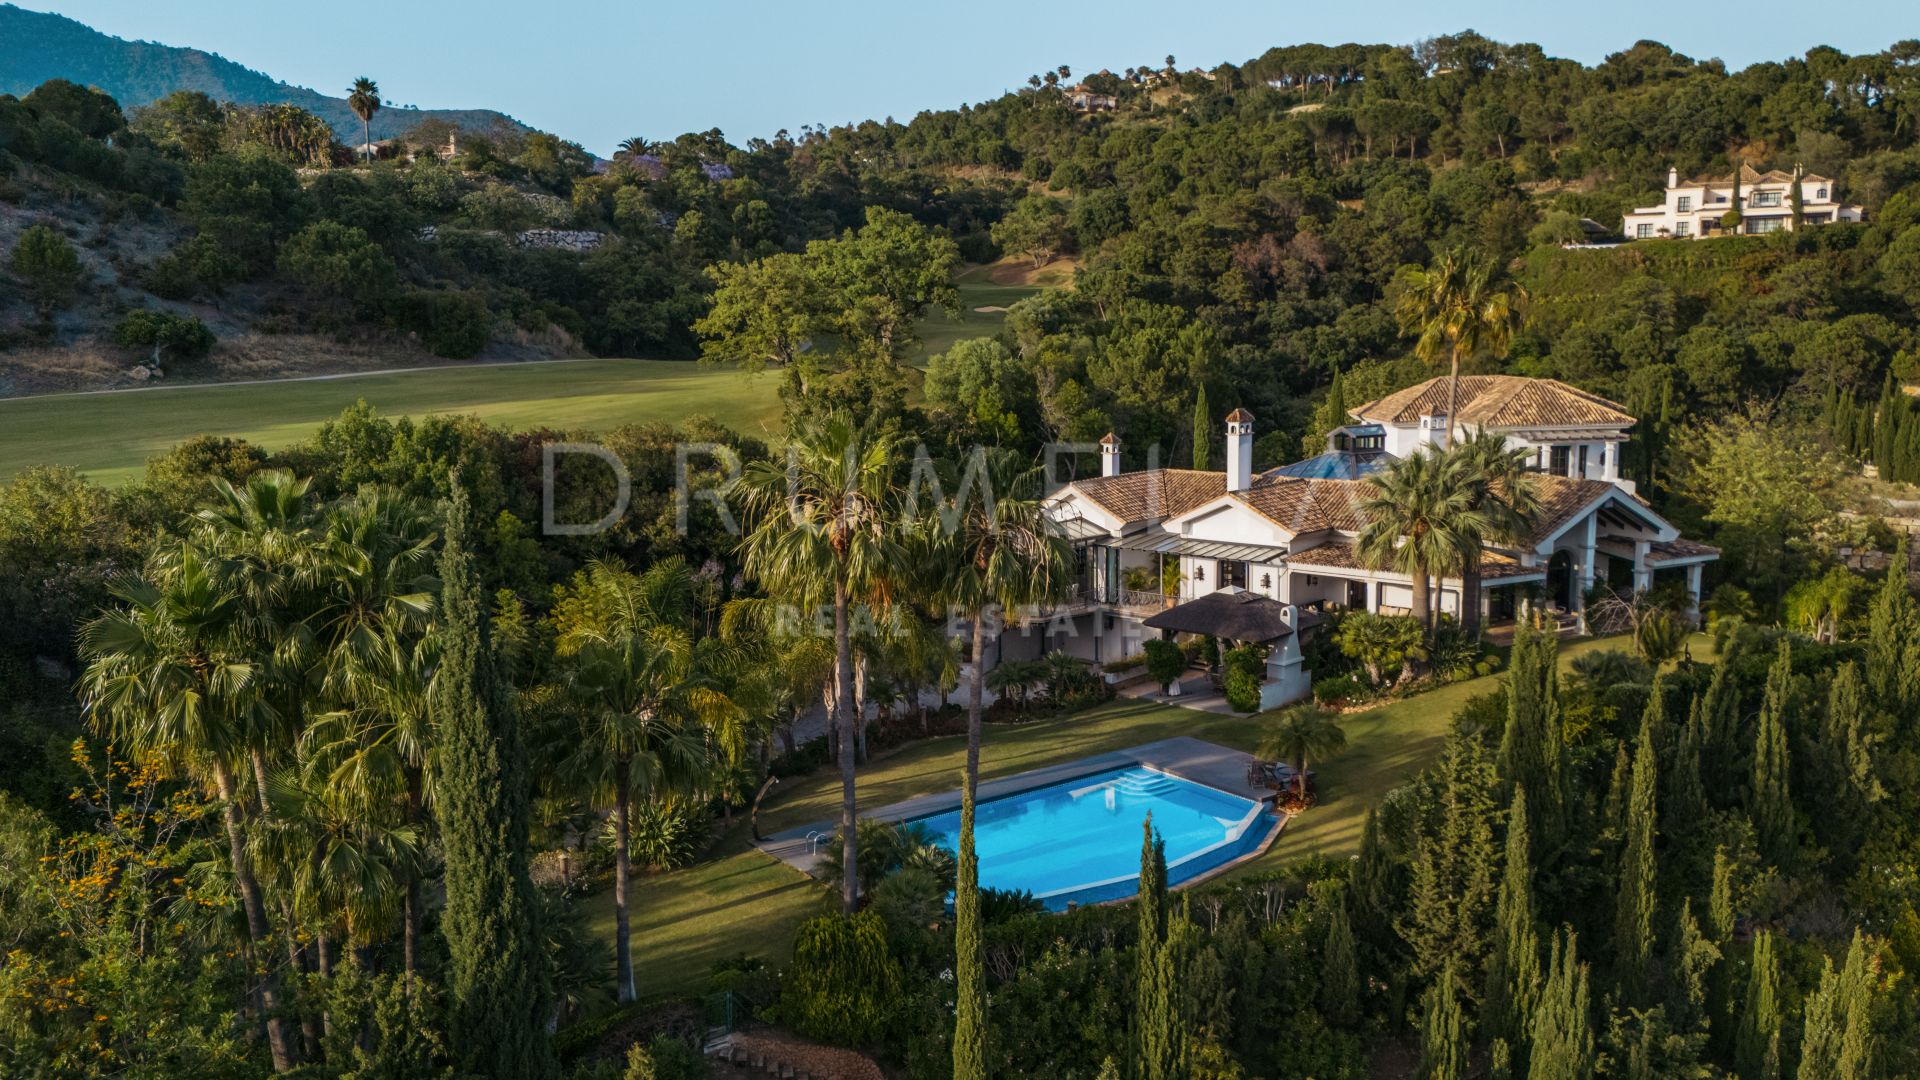 CASA OLIVO - Spektakulær, eksklusiv familievilla med herlig utsikt i La Zagaleta, Benahavis